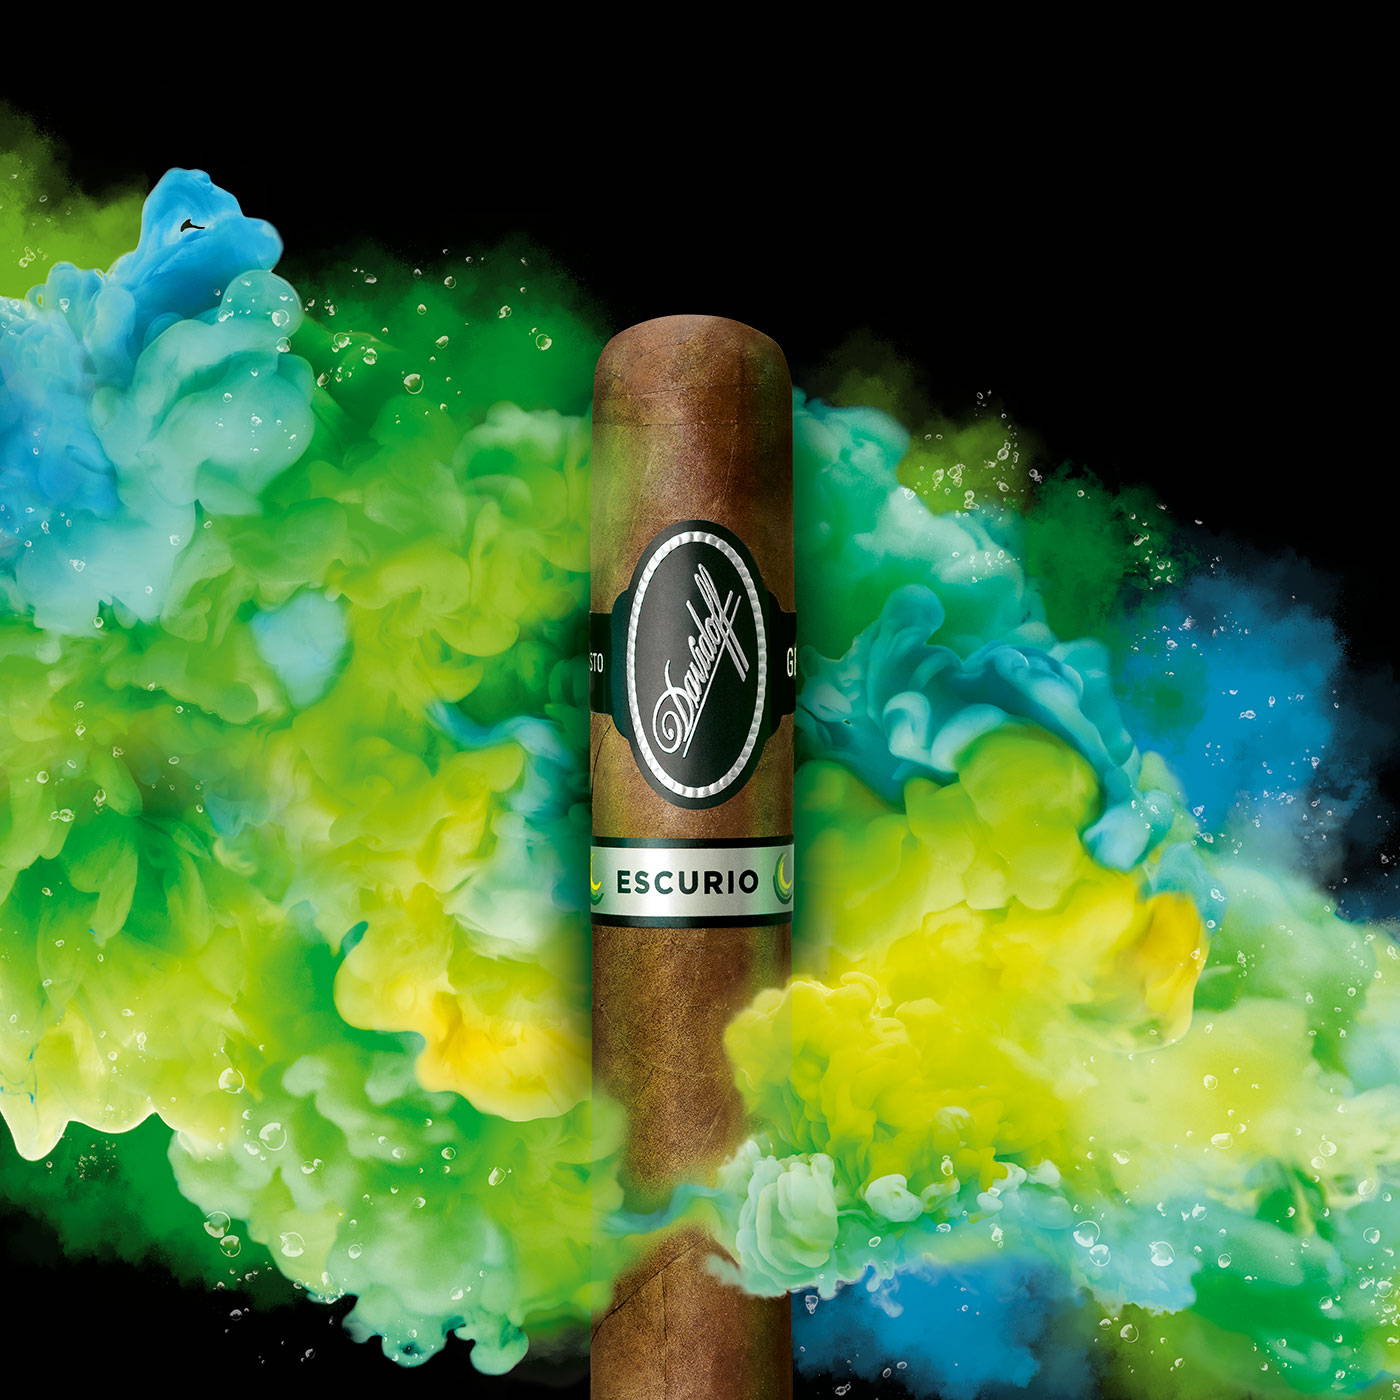 Eine Davidoff Escurio-Zigarre, die vor einer türkis-grünen Wolke von Wasserdampf platziert ist.